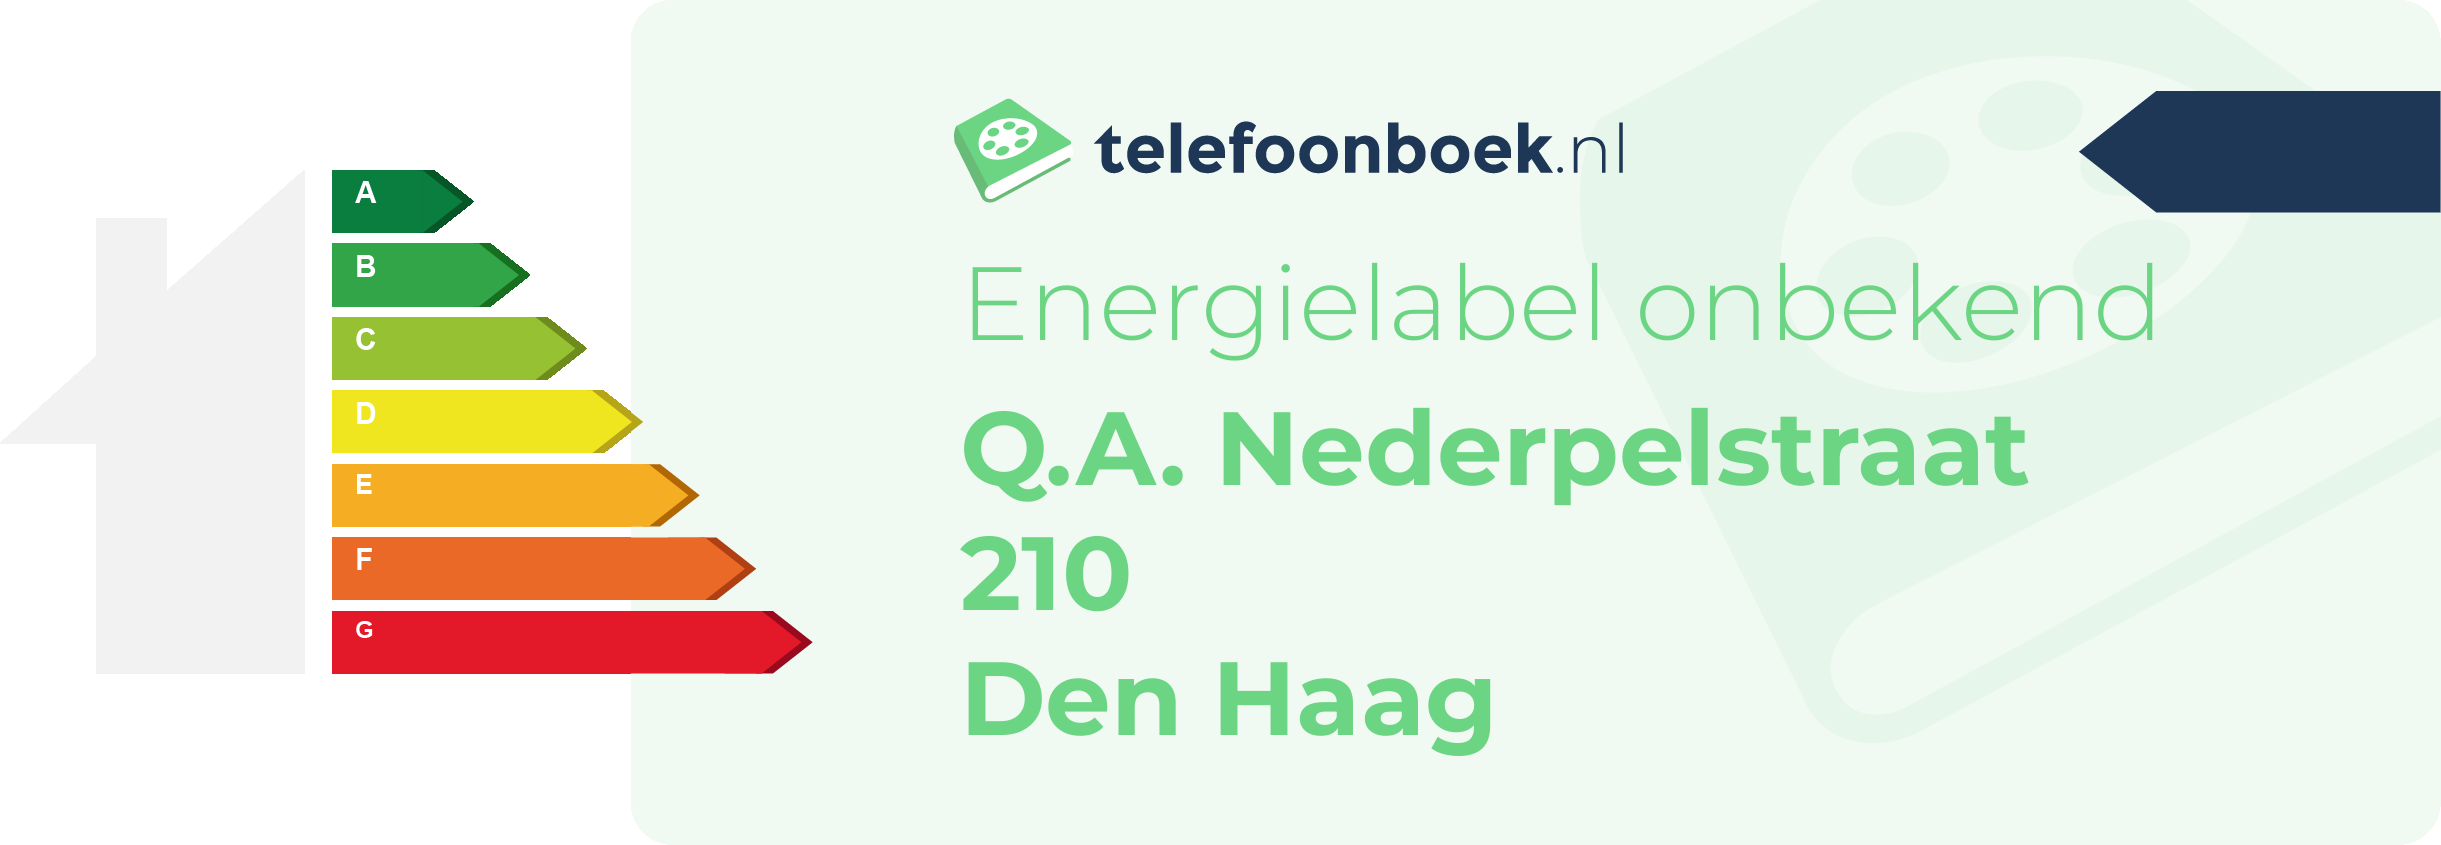 Energielabel Q.A. Nederpelstraat 210 Den Haag